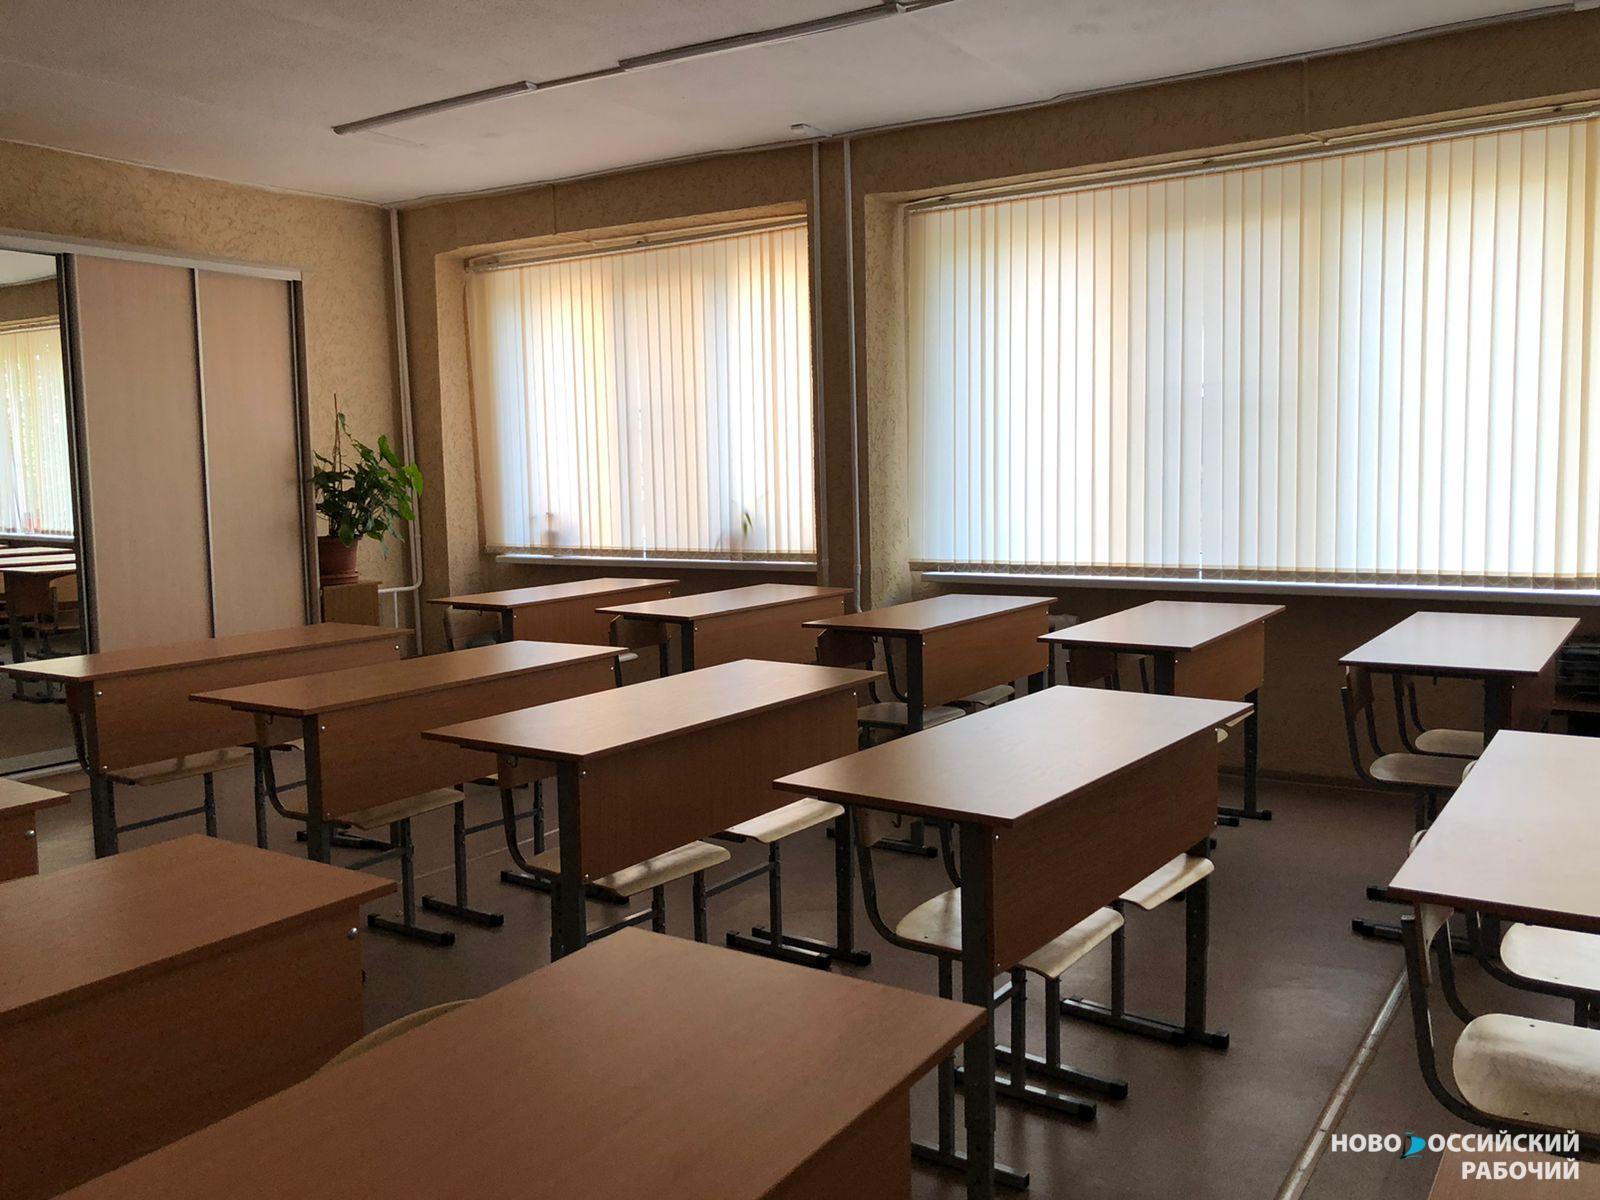 В Новороссийске обновились две школы: работы разные, программа-одна